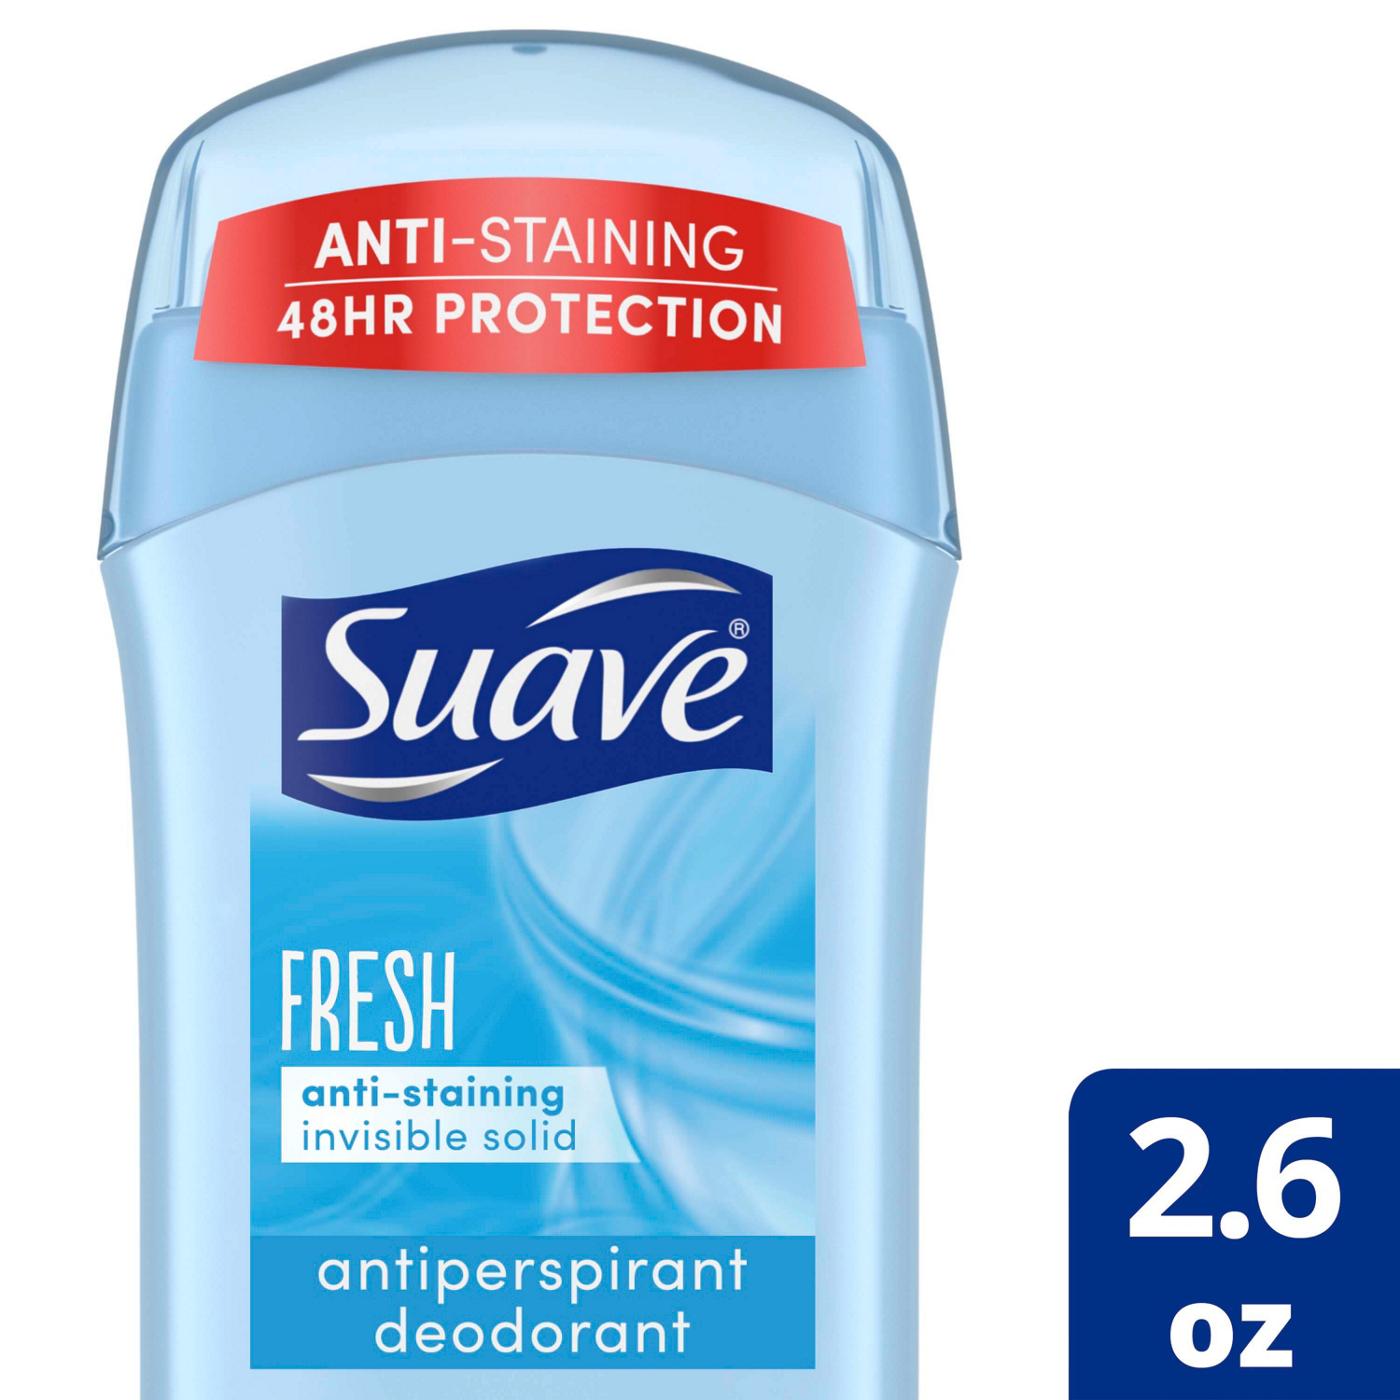 Suave Deodorant Fresh Antiperspirant & Deodorant Stick; image 3 of 3